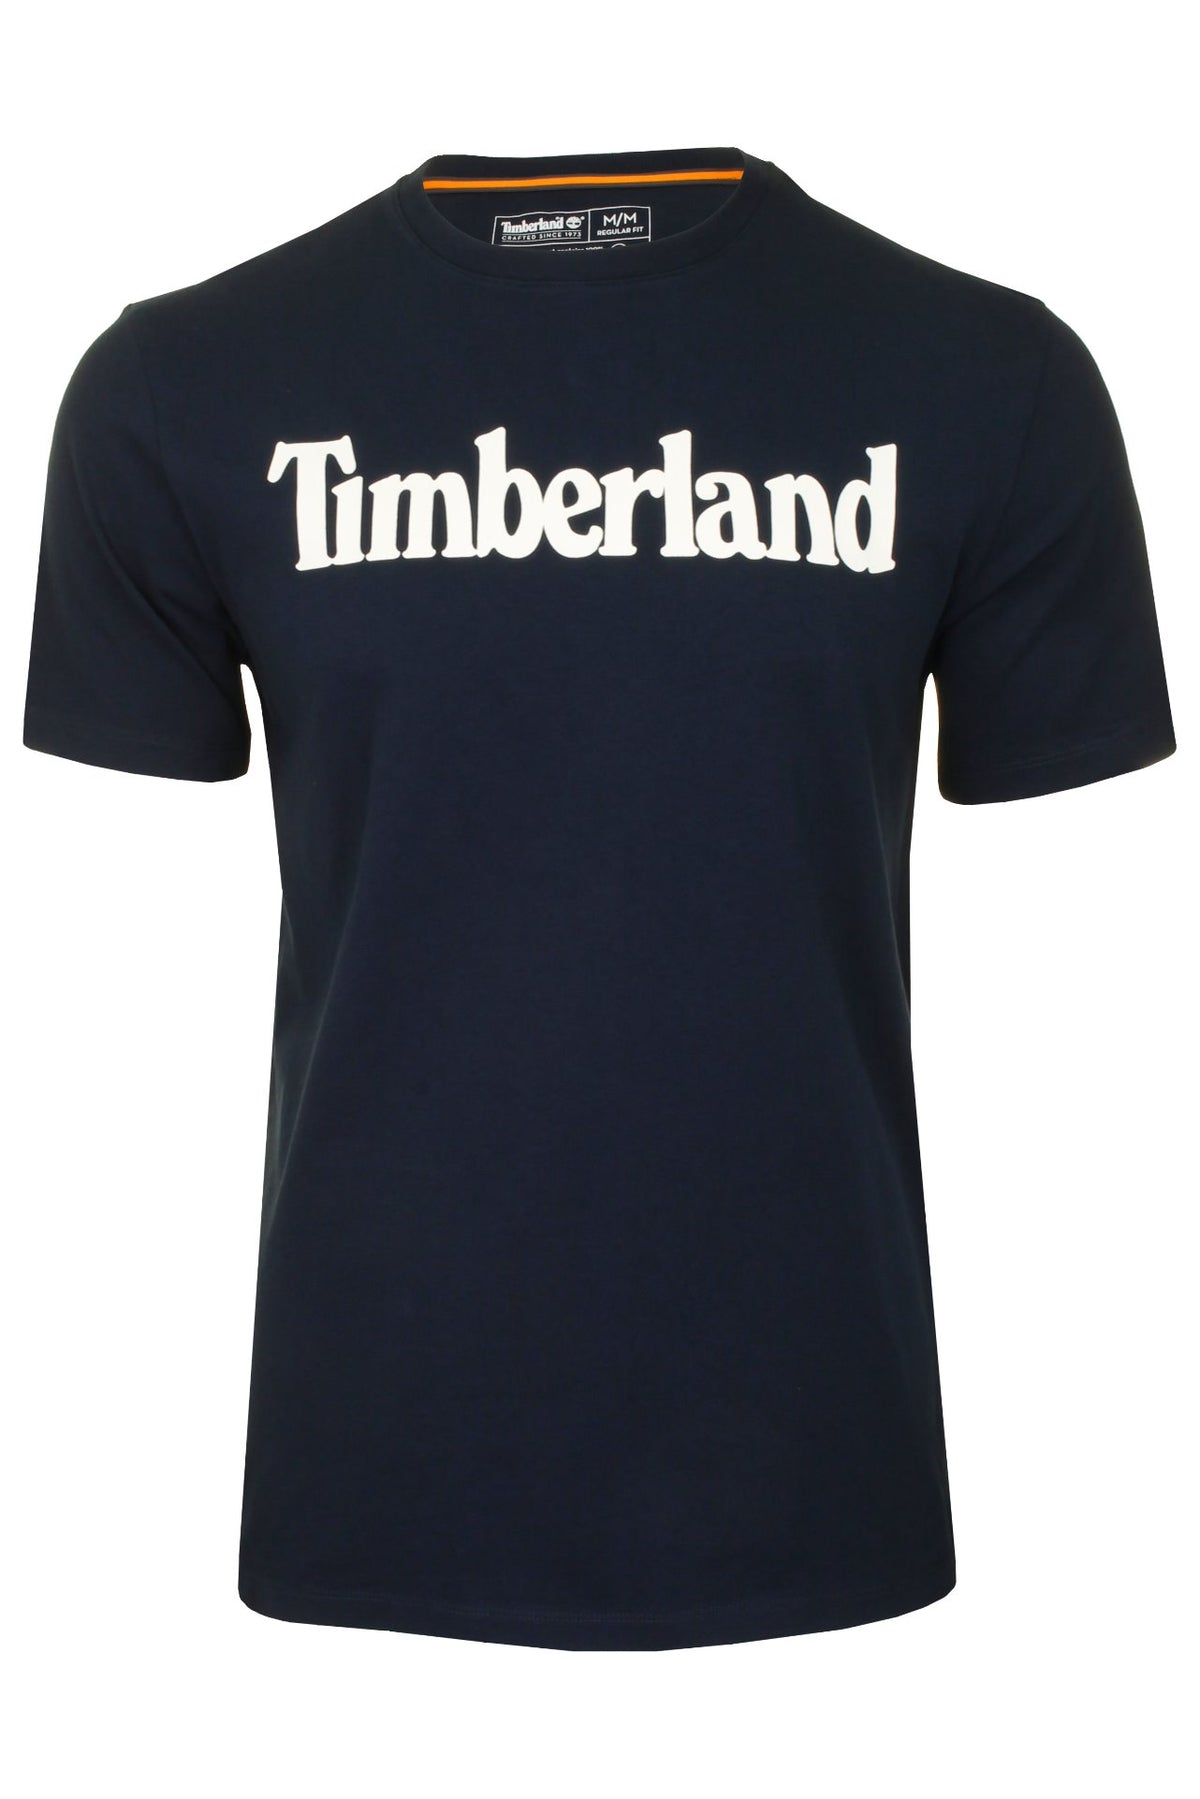 Timberland Mens Jersey T-Shirt 'Kennebec River Linea Tee', 01, Tb0A2C31, Dark Sapphire